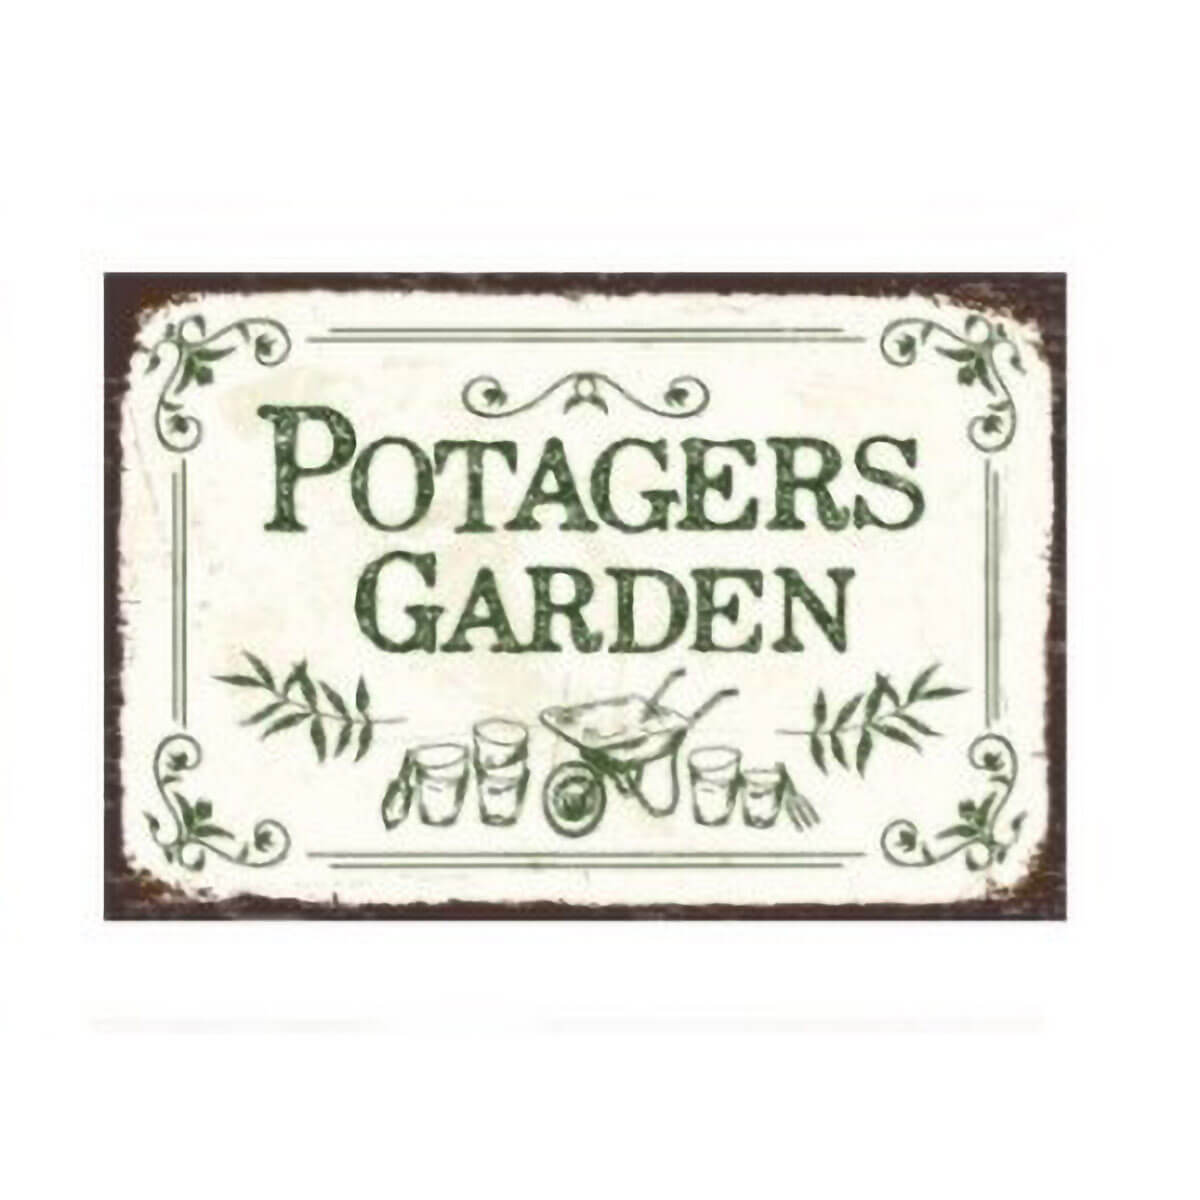 Vintage Embossed Metal Garden Sign - Potagers Garden - Alfresco Gardenware